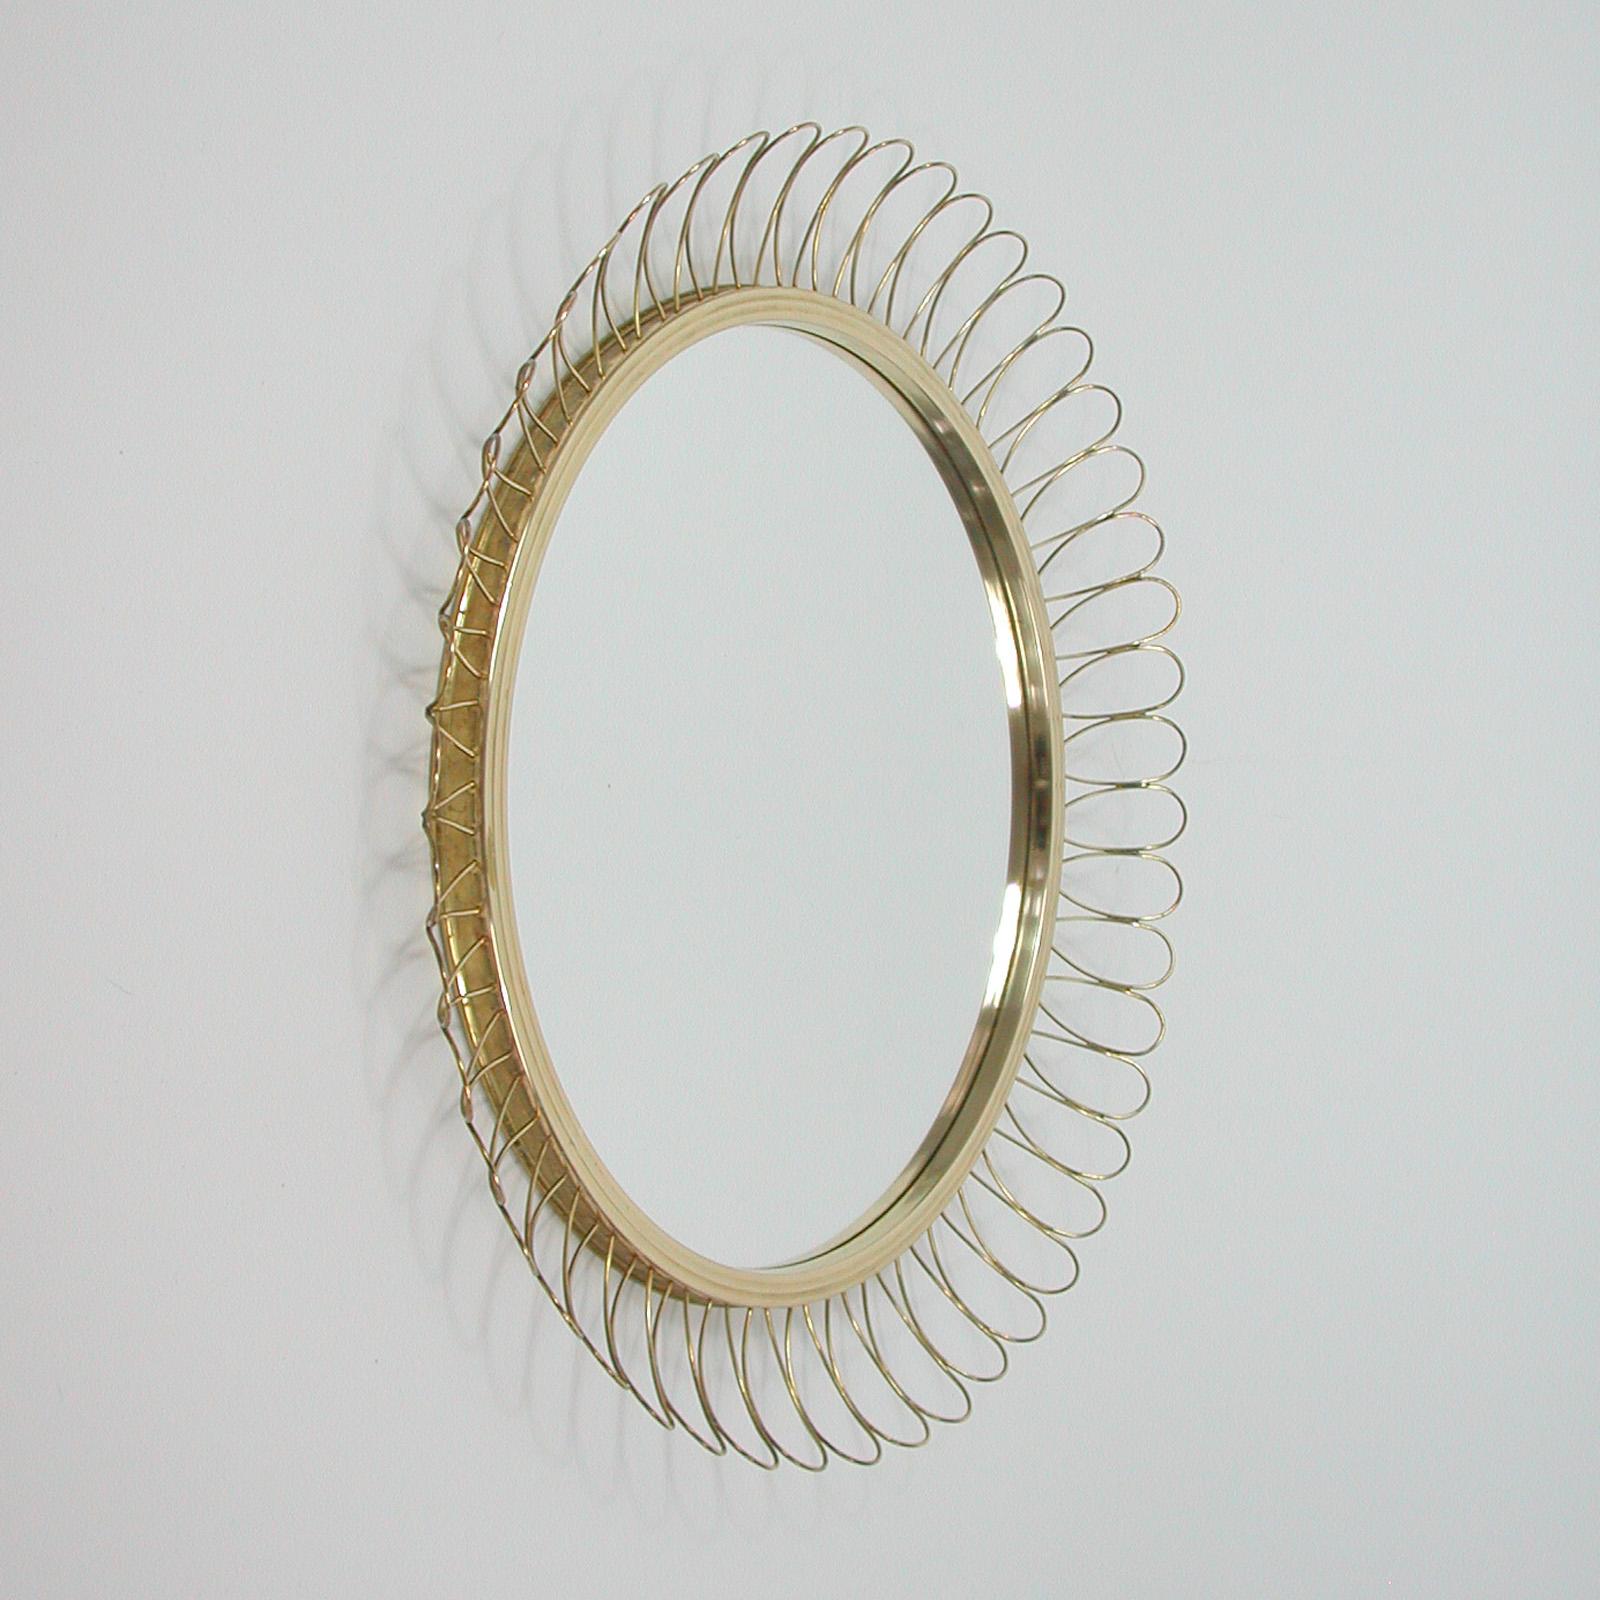 Swedish Midcentury Sculptural Round Brass Wall Mirror, Sweden 1950s For Sale